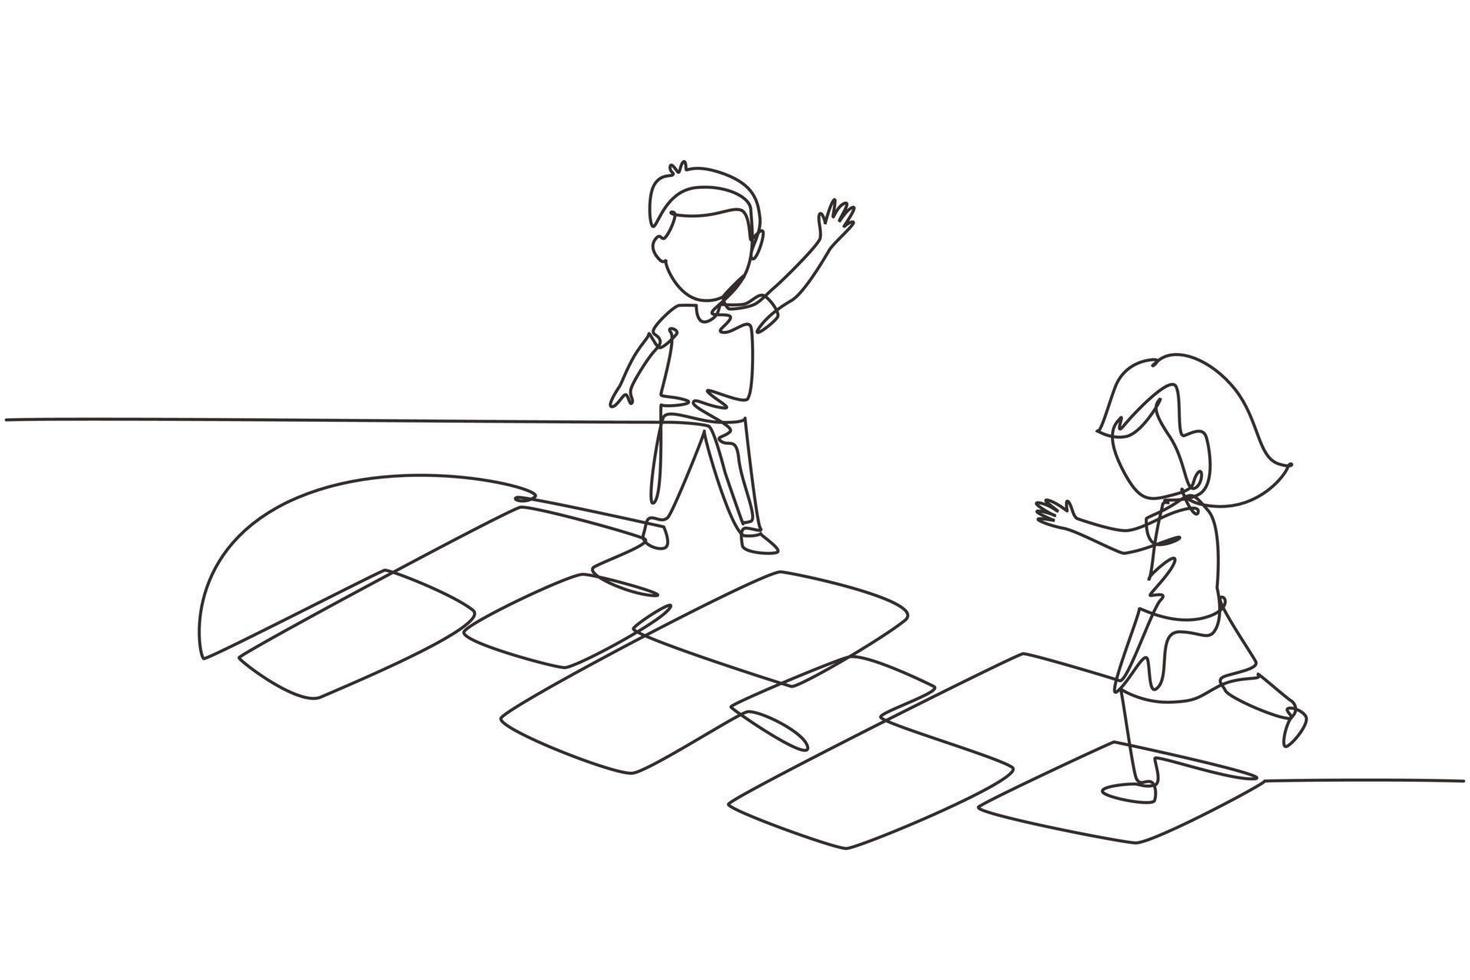 una sola línea continua dibujando a una niña y un niño jugando a la rayuela en el jardín de infantes. niños felices saltando en el patio de recreo. cancha de hop scotch dibujada con tiza. vector de diseño gráfico de dibujo de una línea